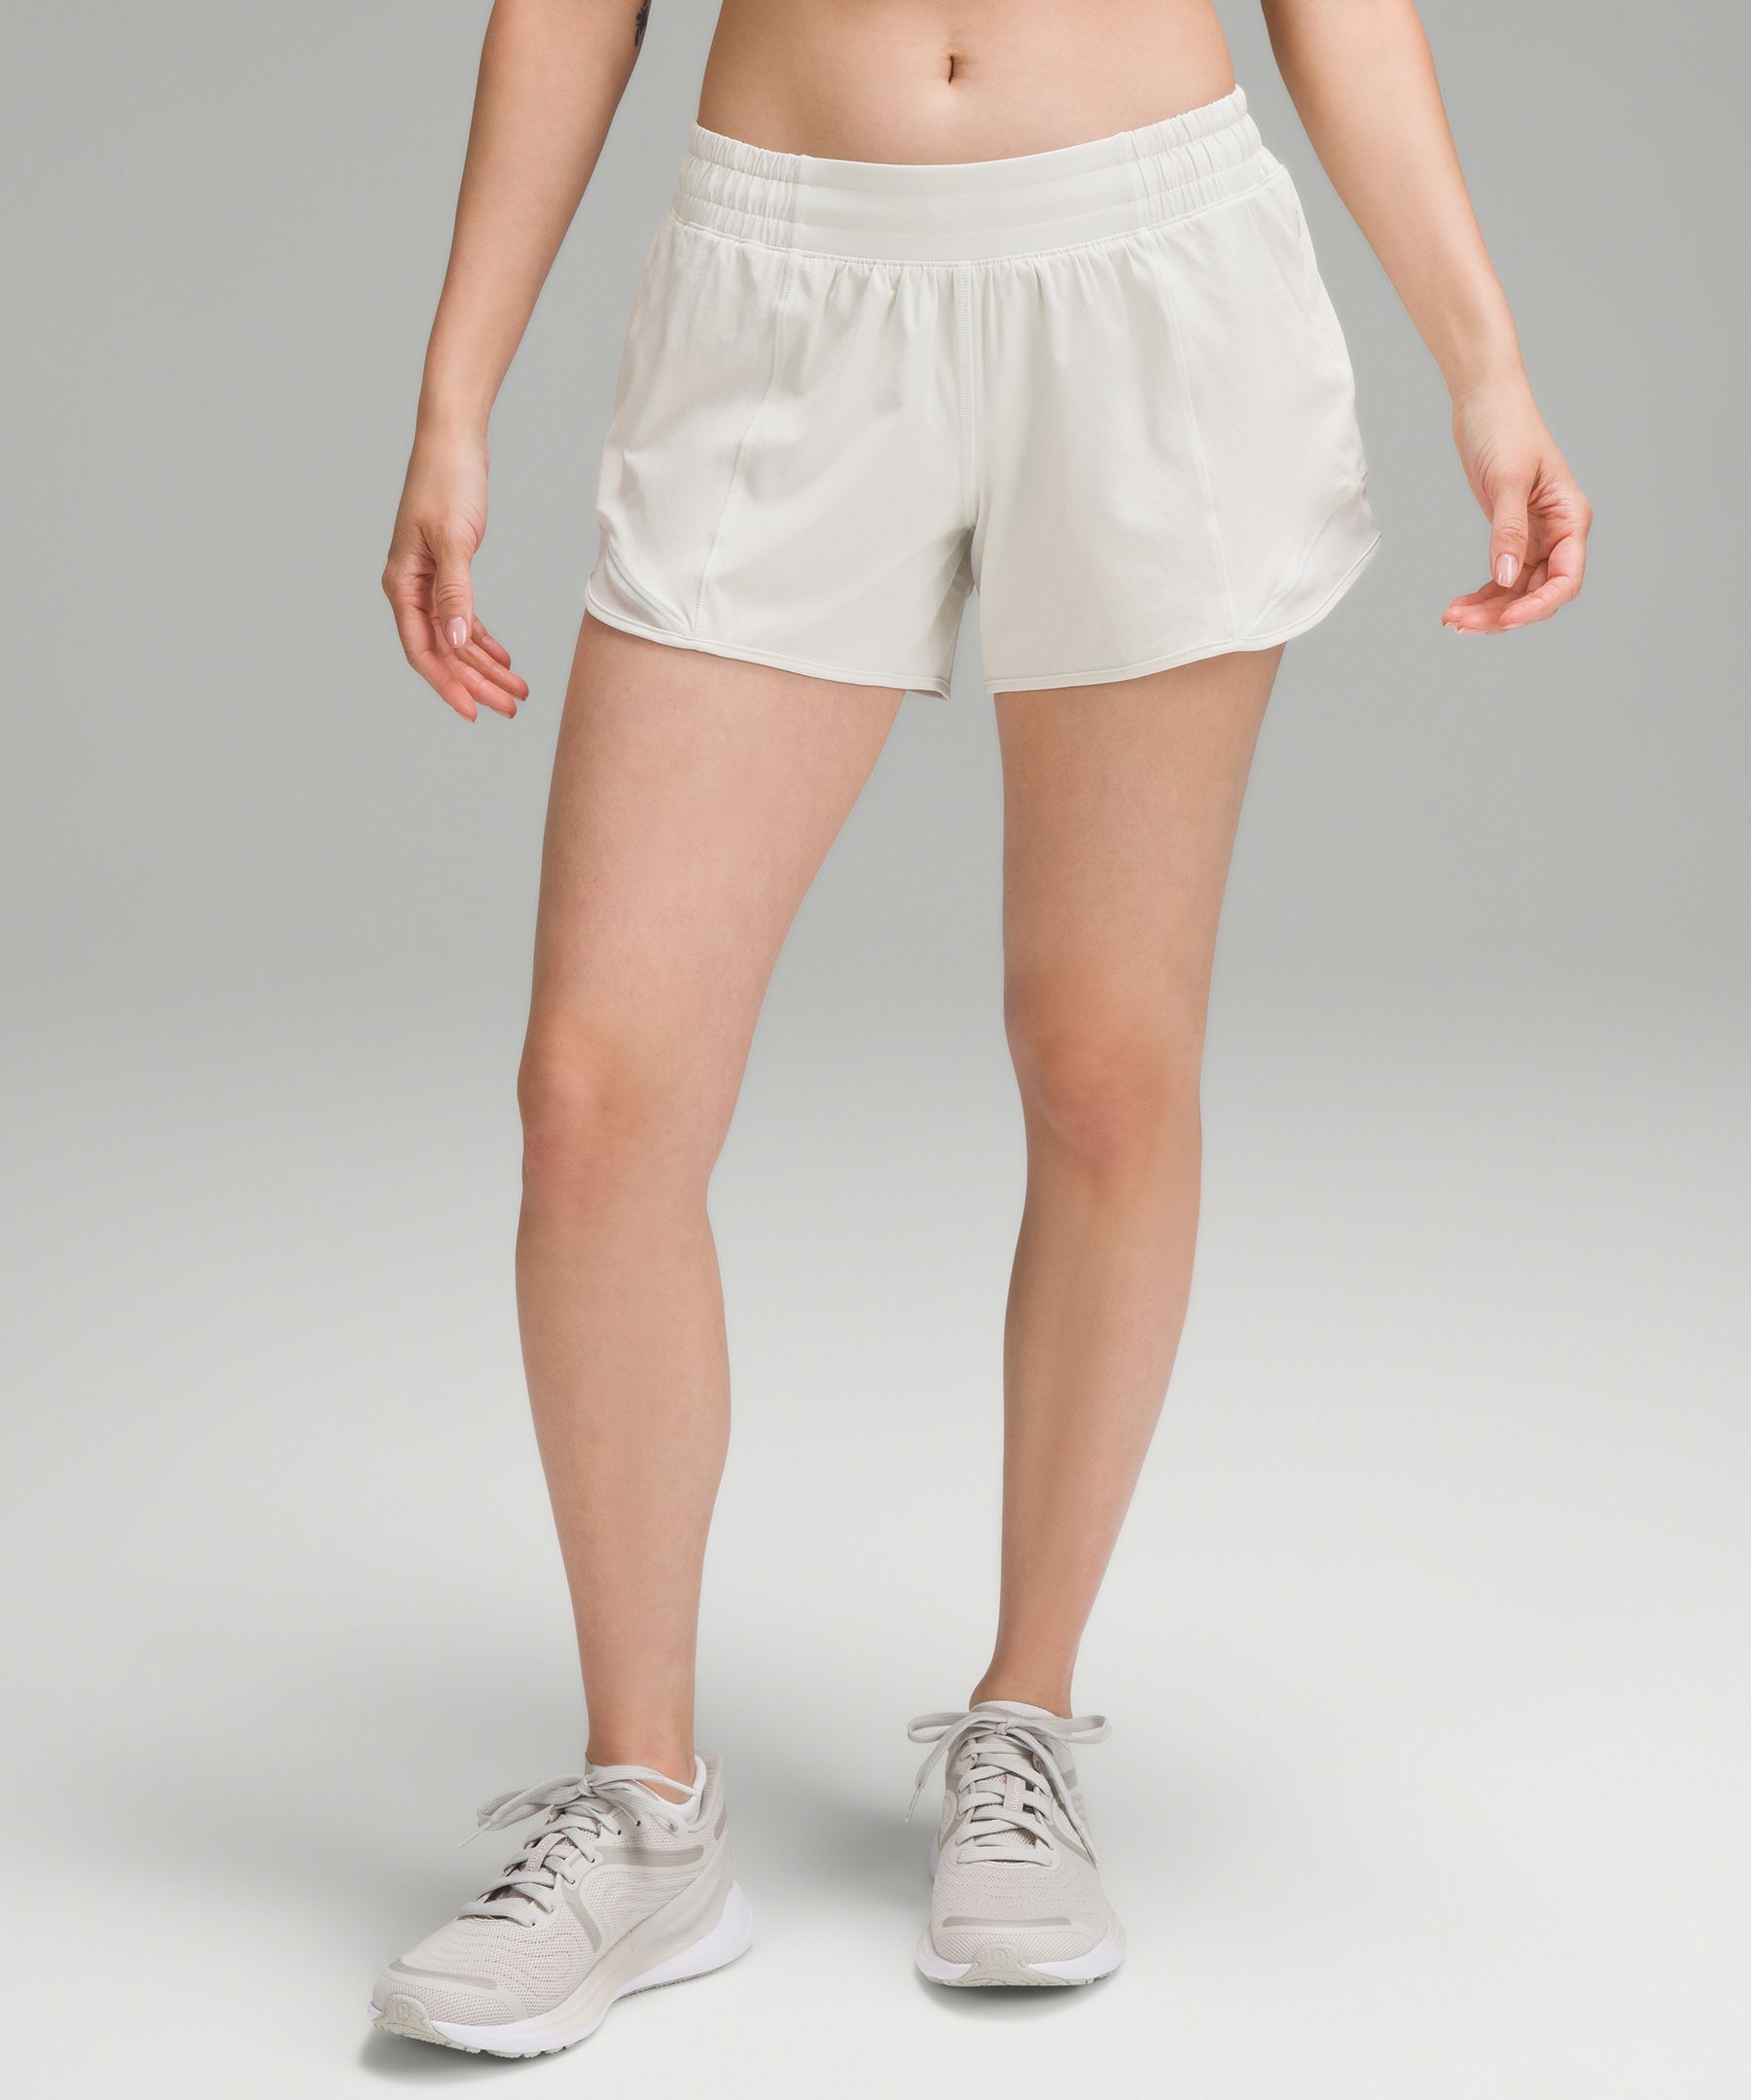 Lululemon Hotty Hot Low-rise Lined Shorts 4"